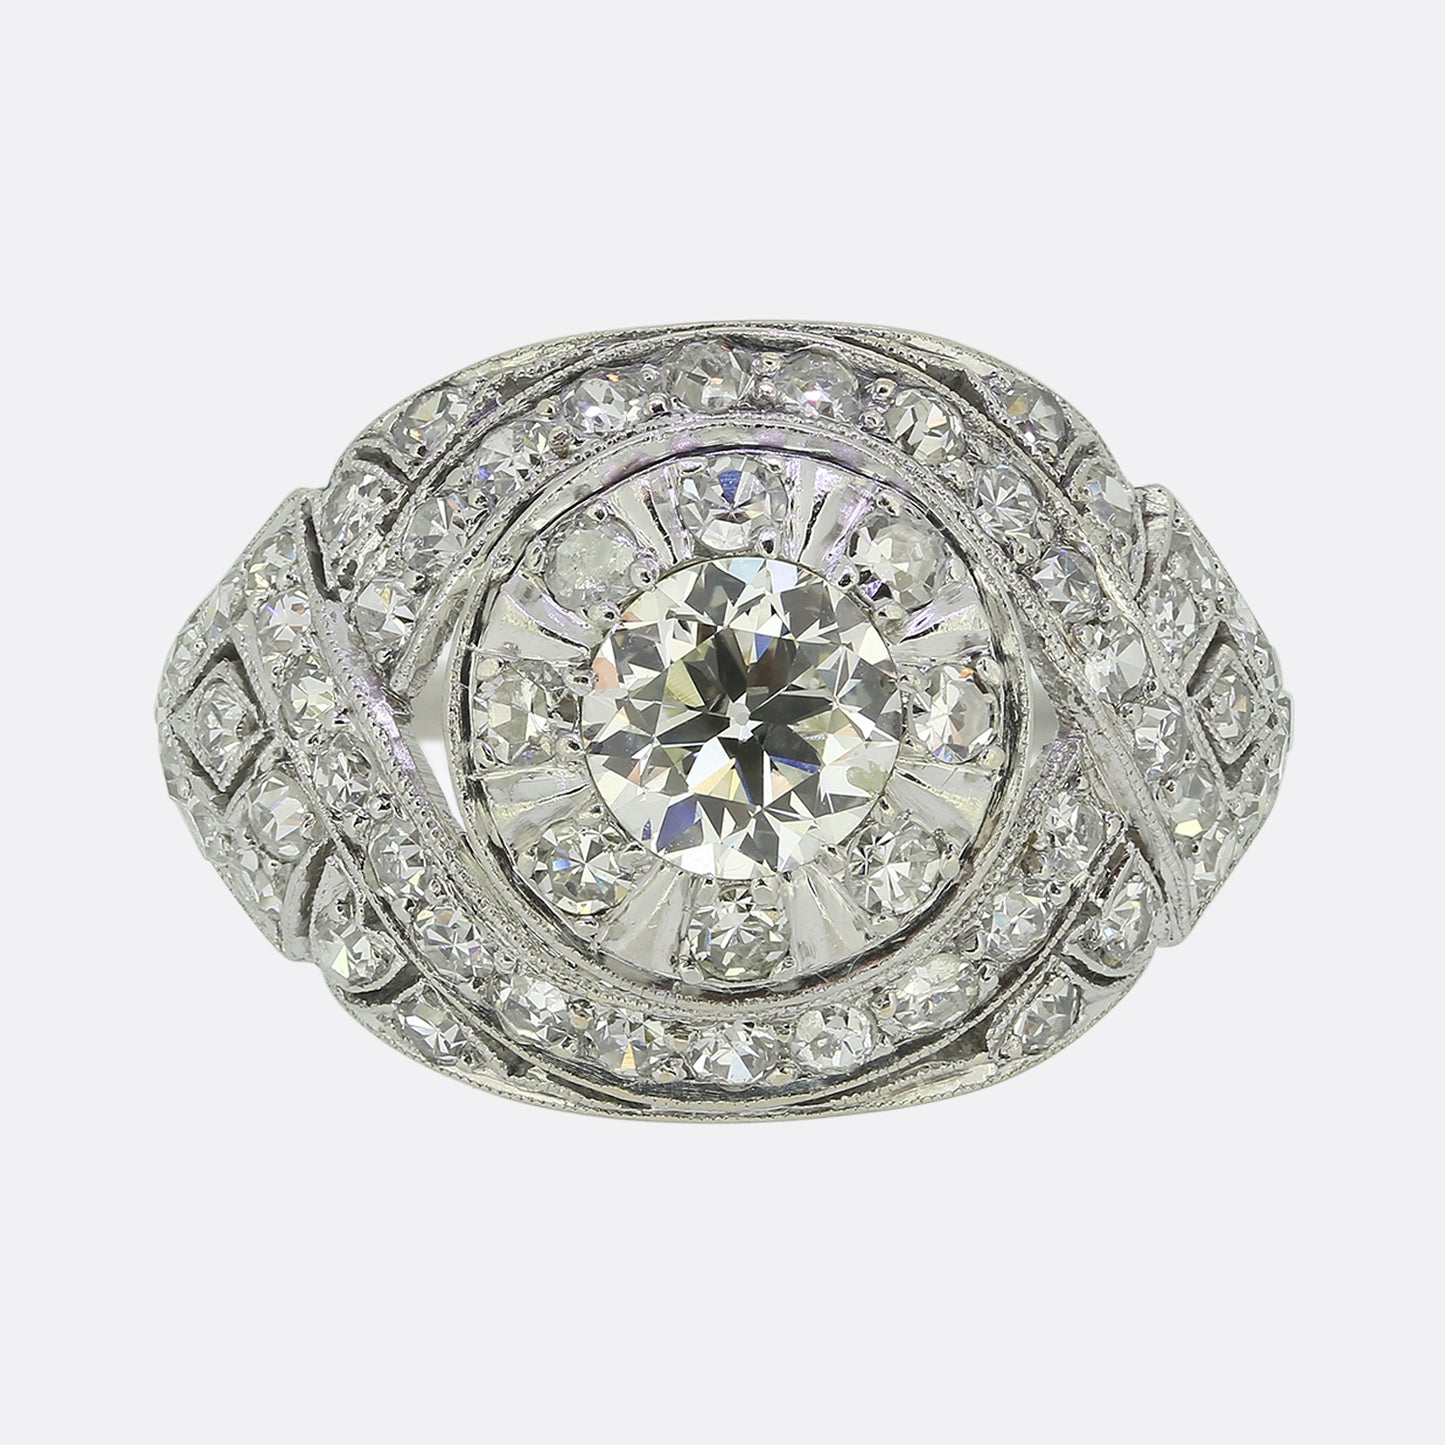 Art Deco Diamond Bombe Ring